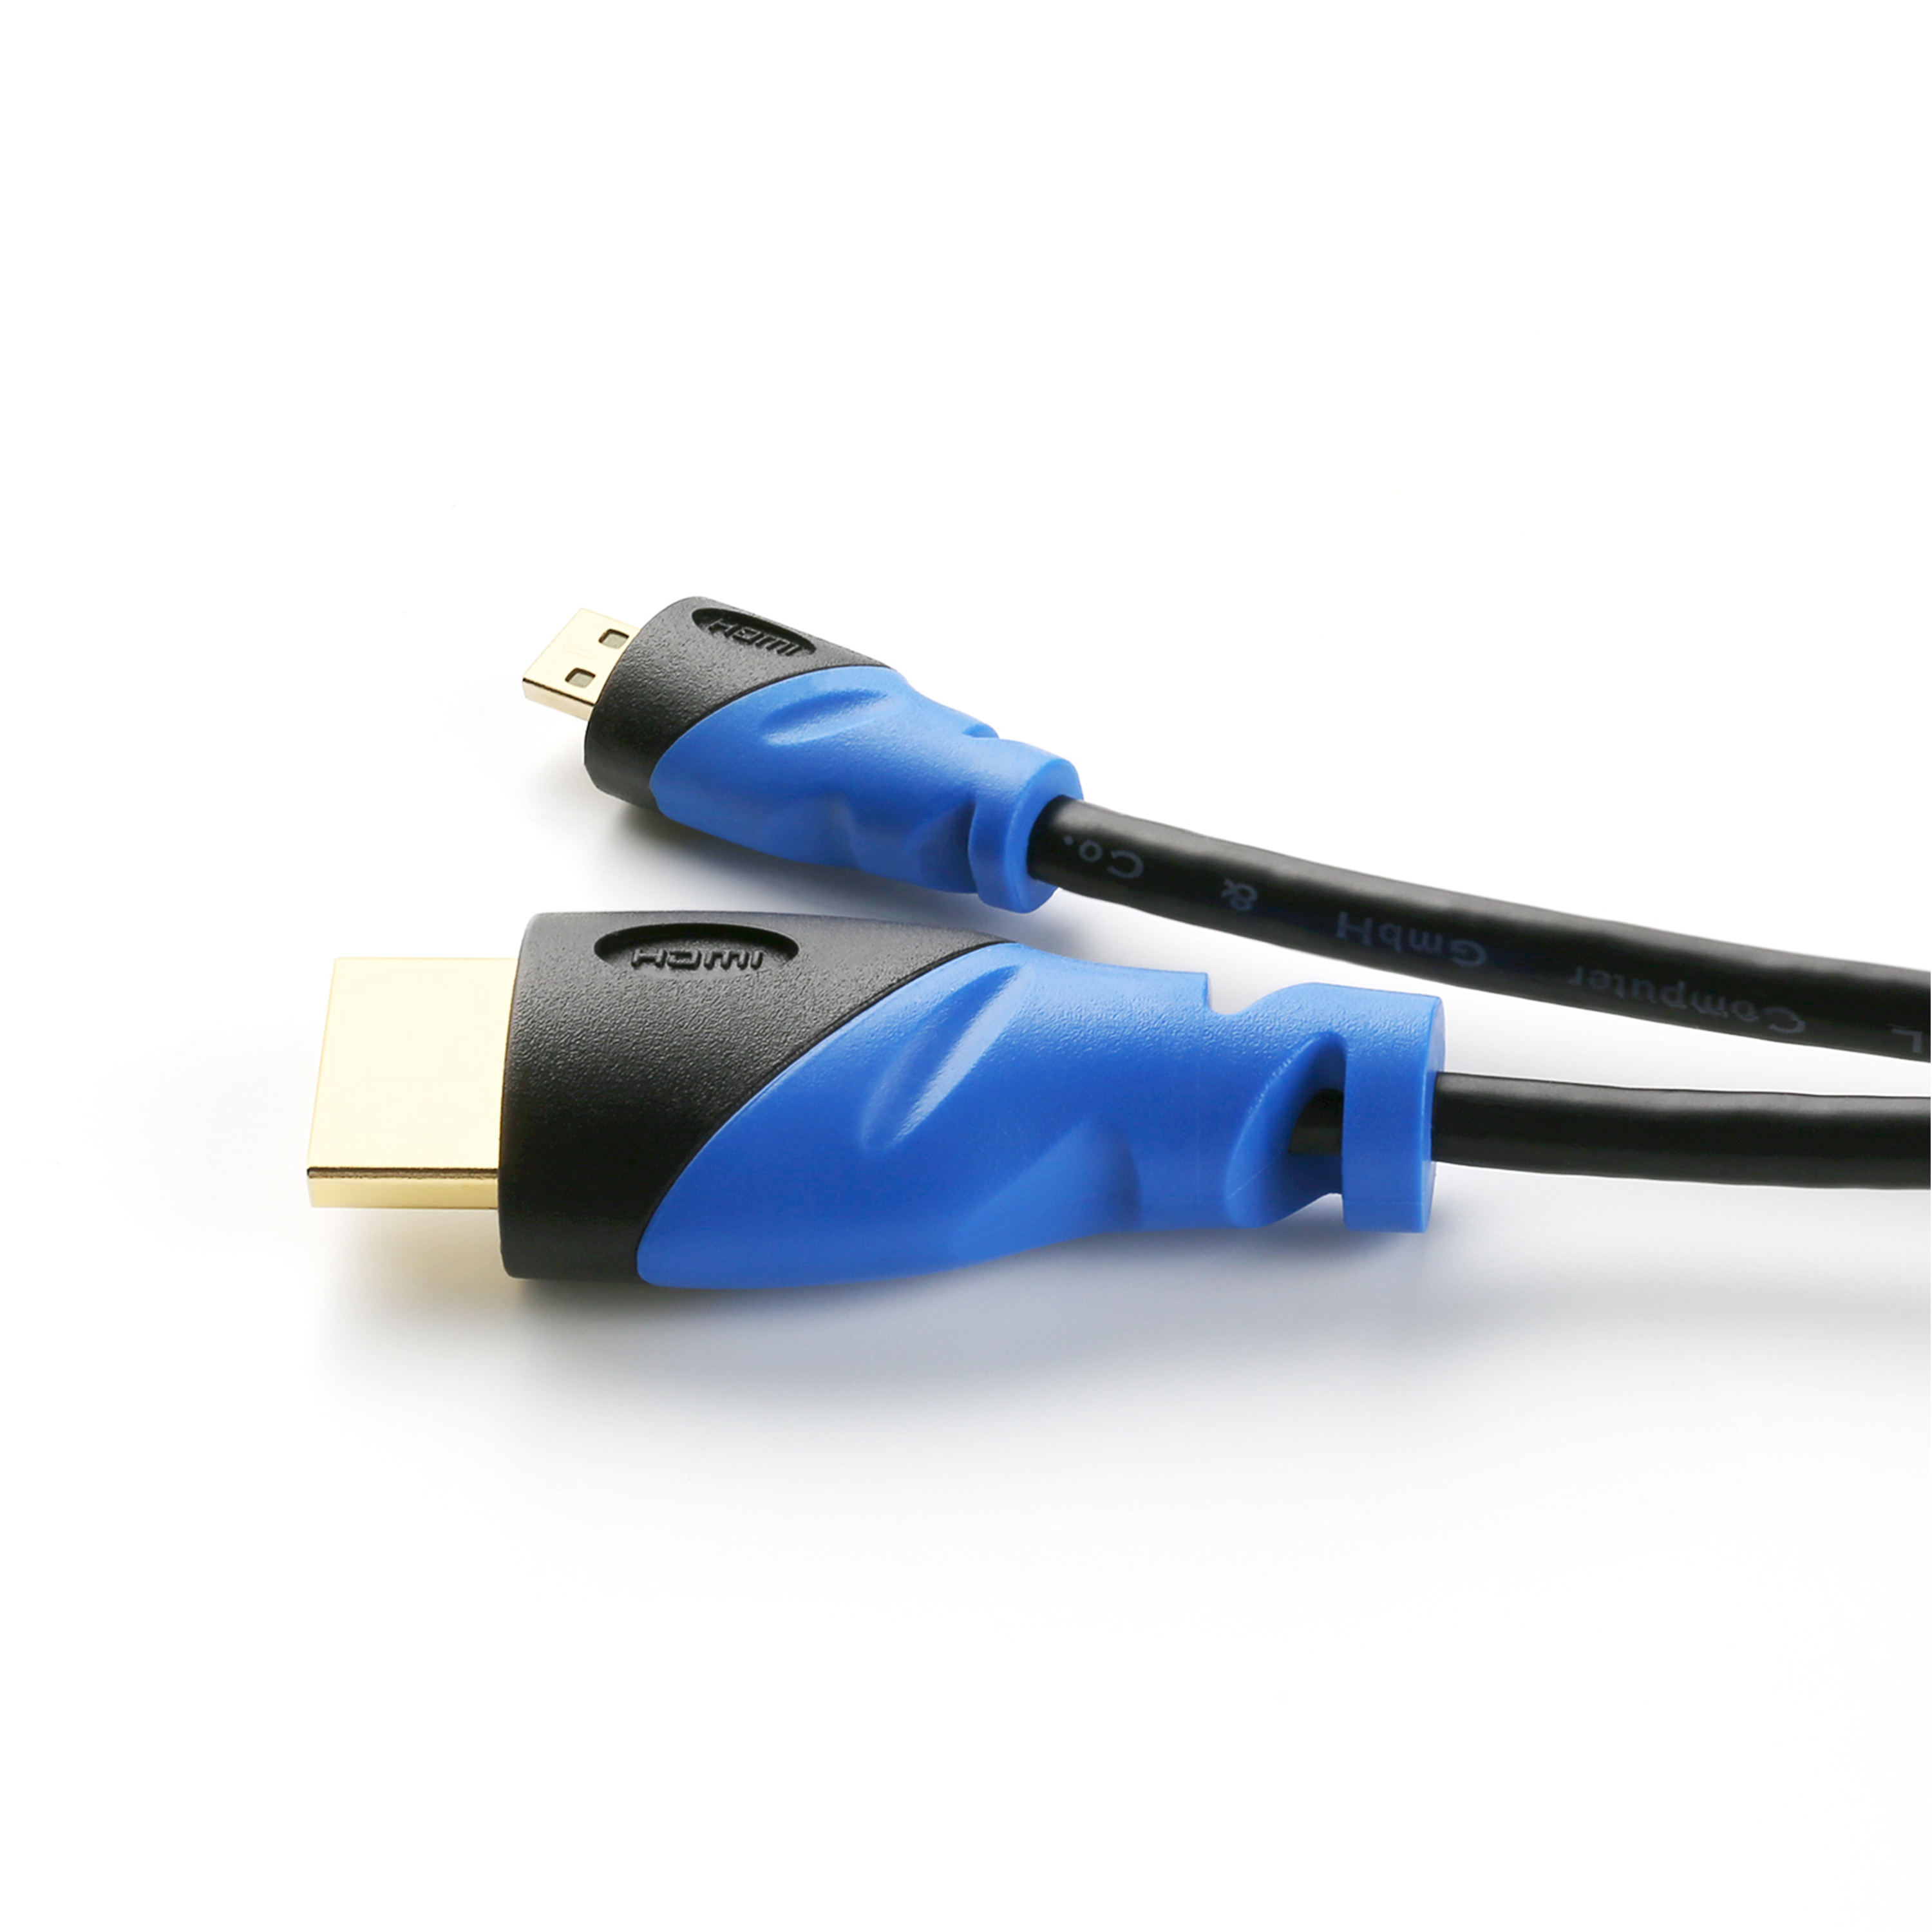 CSL microHDMI 2.0 Kabel, Kabel, schwarz/blau 2m HDMI